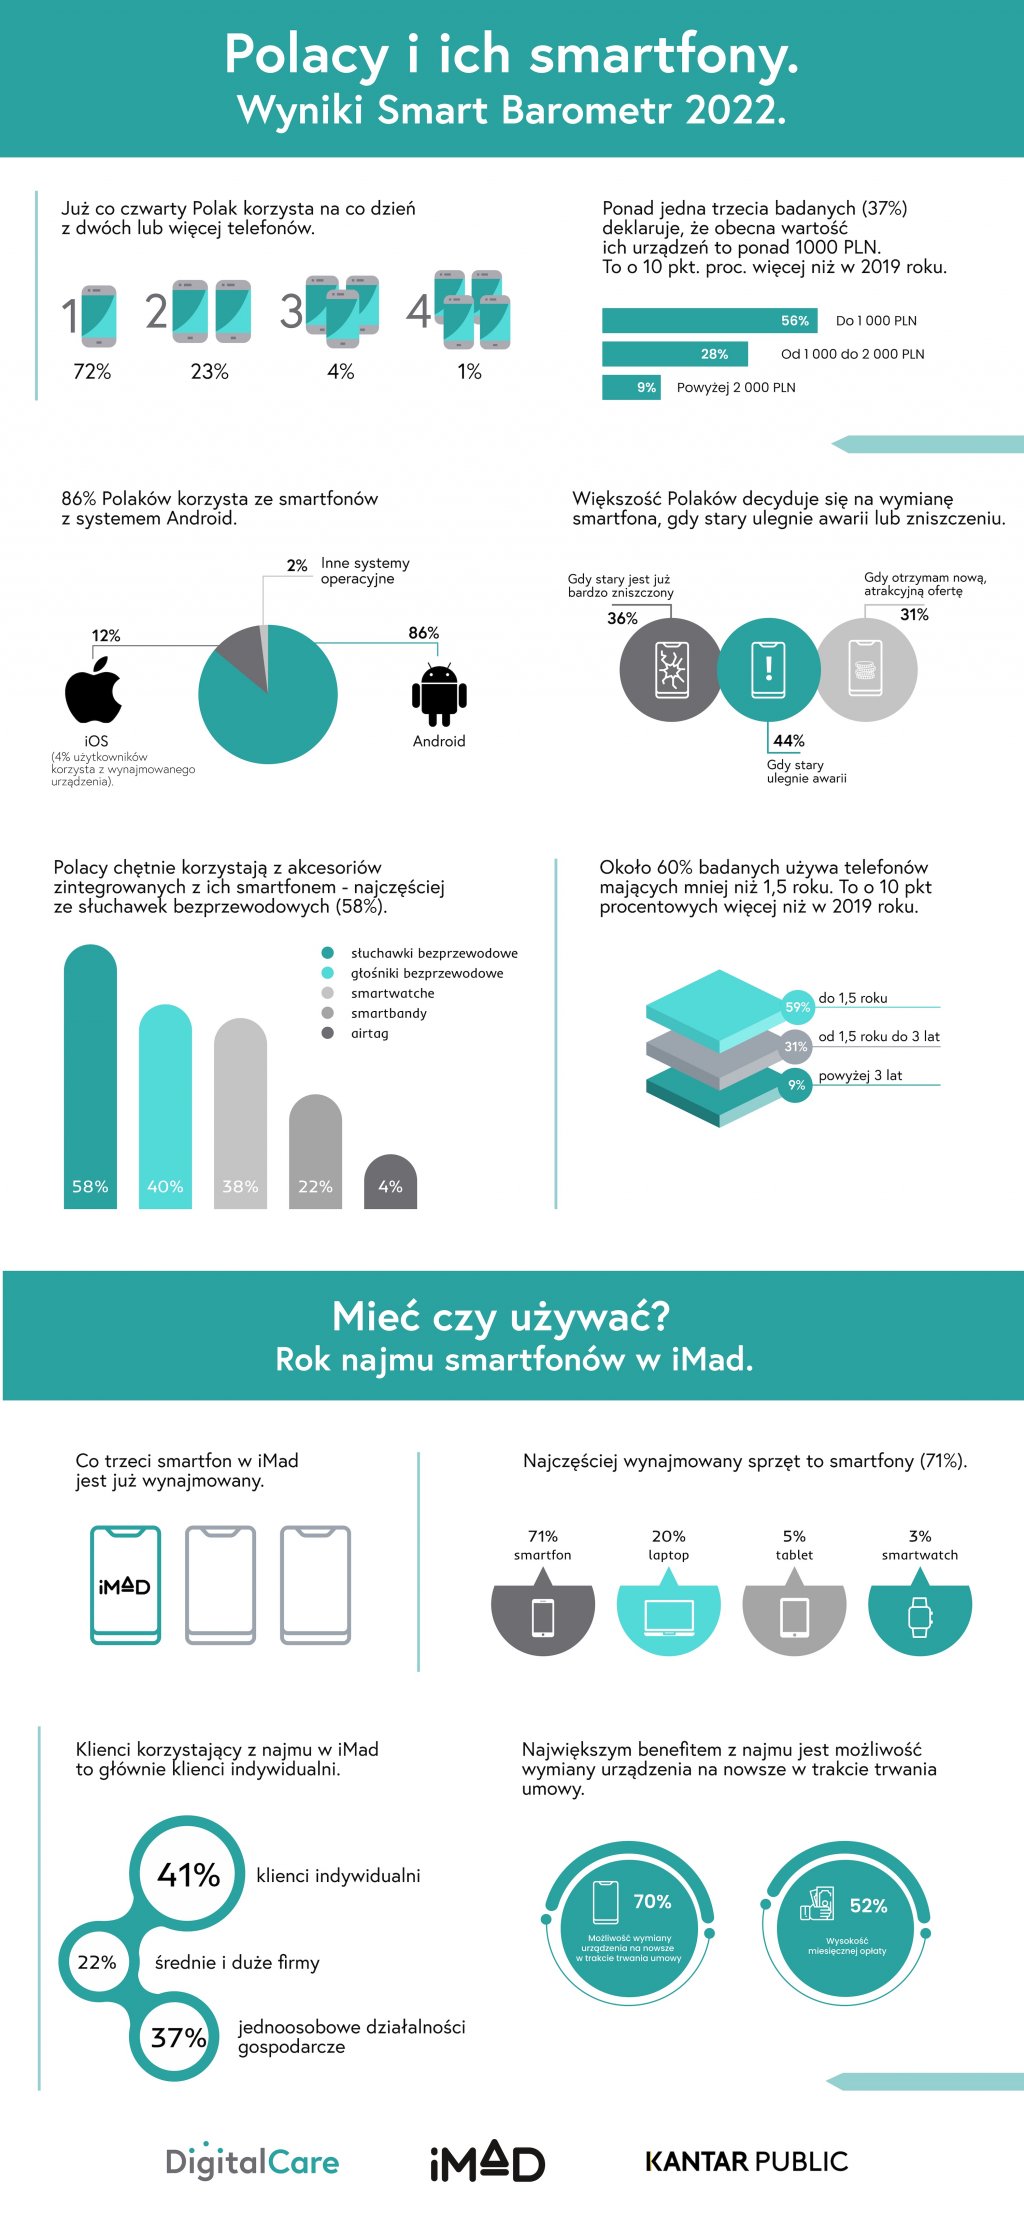 polacy i ich smartfony - wyniki smart barometr 2022 - infografika